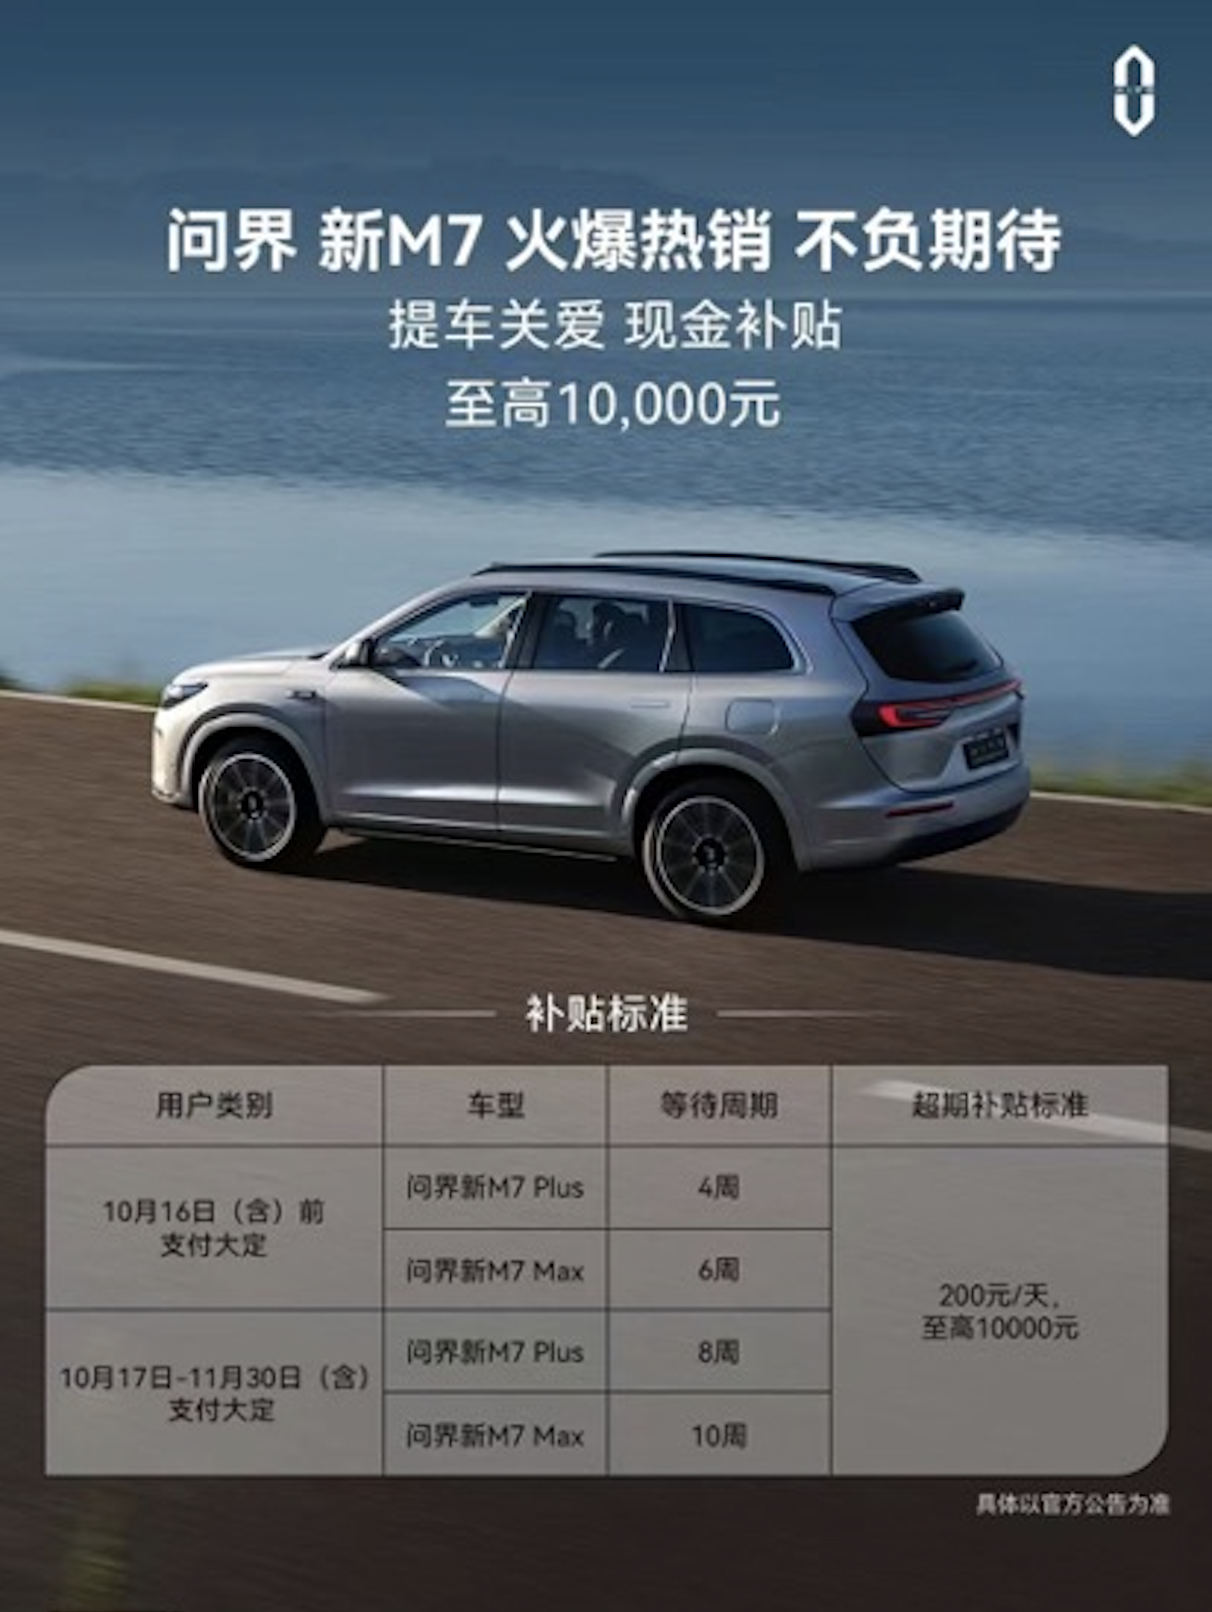 智界S7鸿蒙智行首款轿车 都市潮流出行新选择_车讯网chexun.com-车讯网